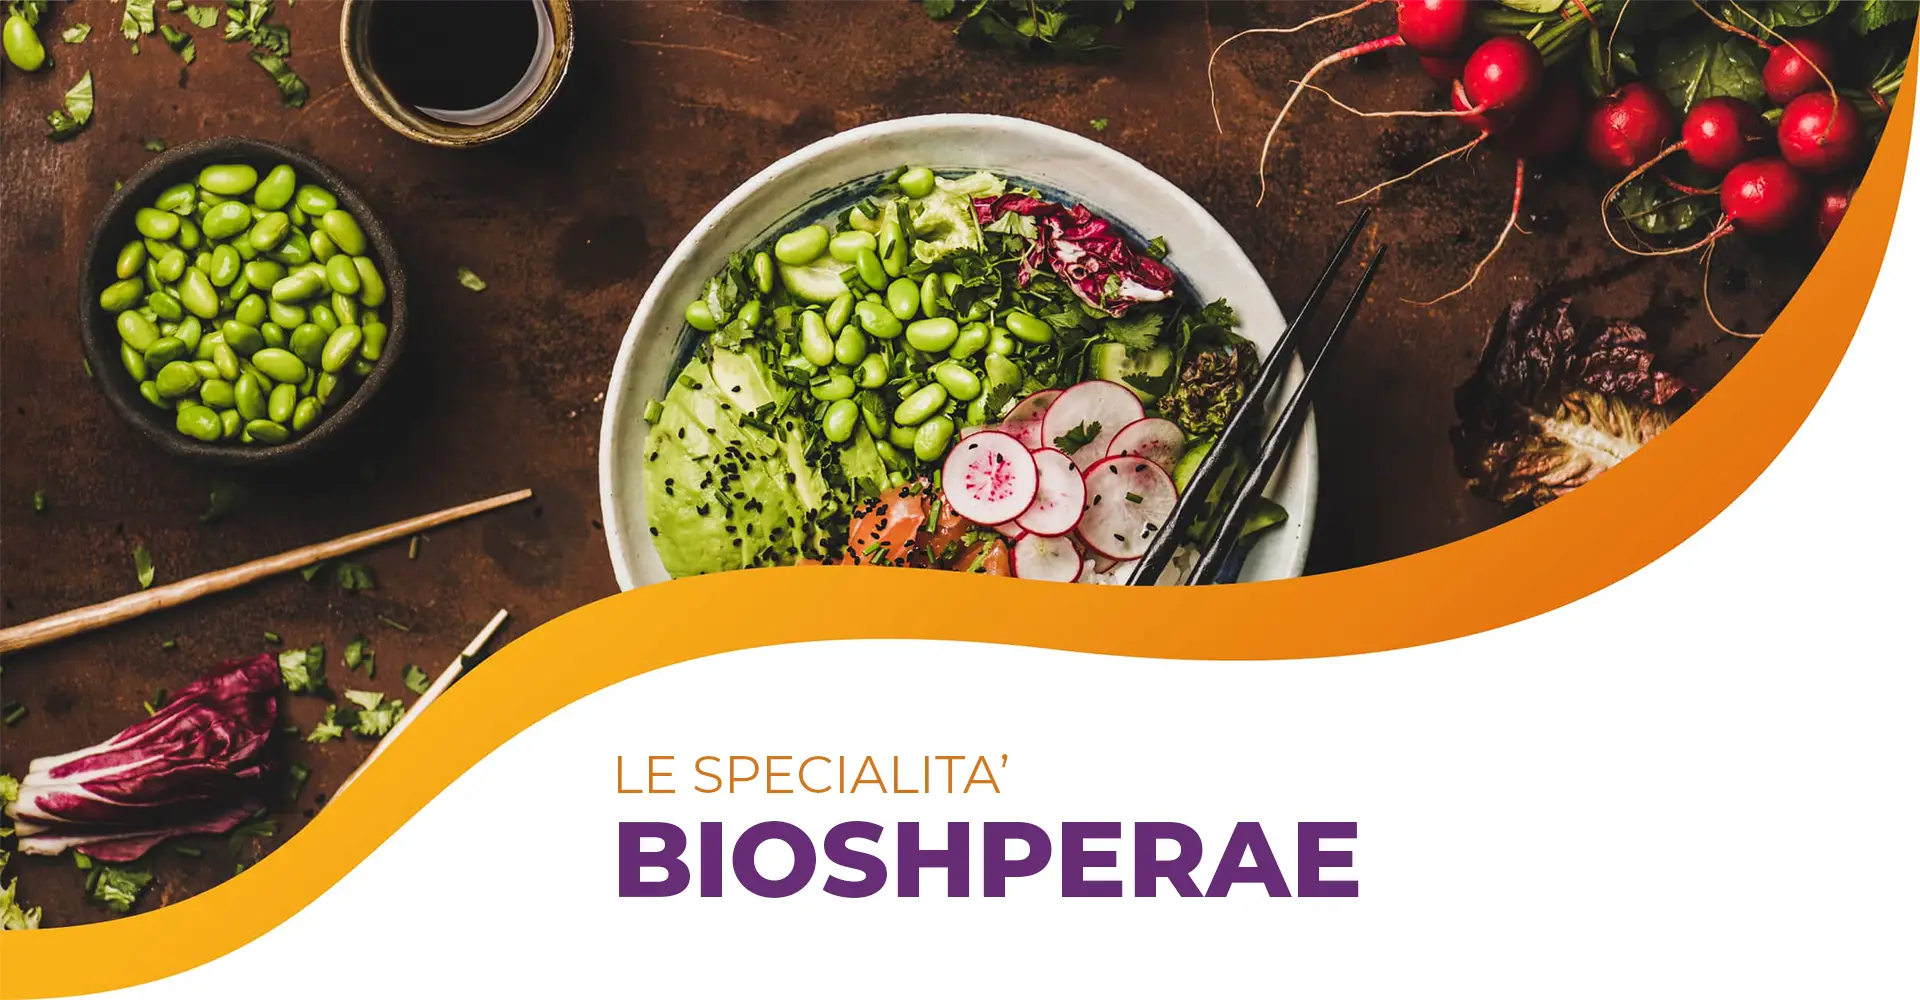 Biospherae è il servizio di catering biologico e sostenibile di Atmospherae